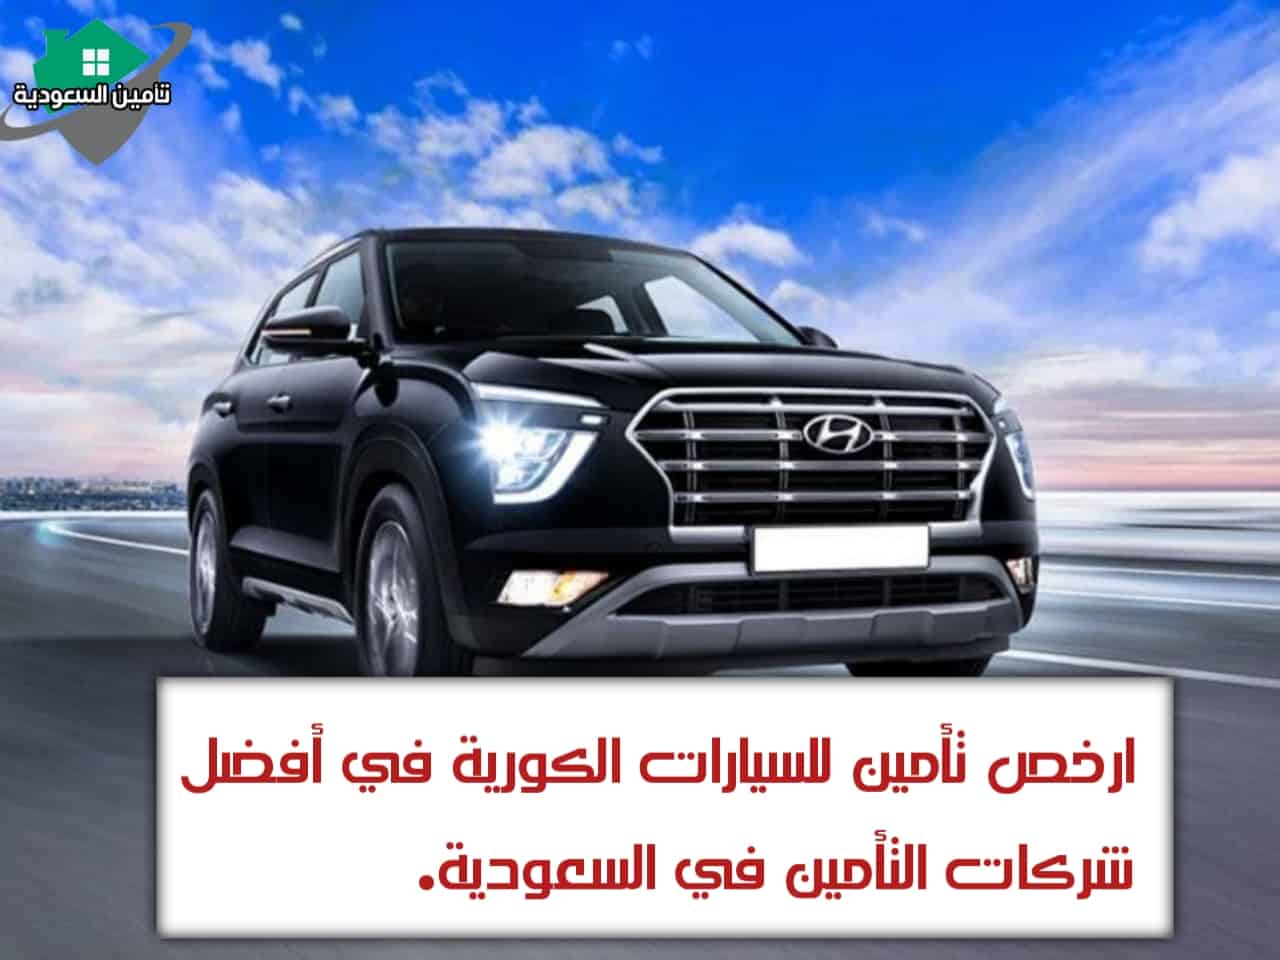 ارخص تأمين للسيارات الكورية في أفضل شركات التأمين في السعودية